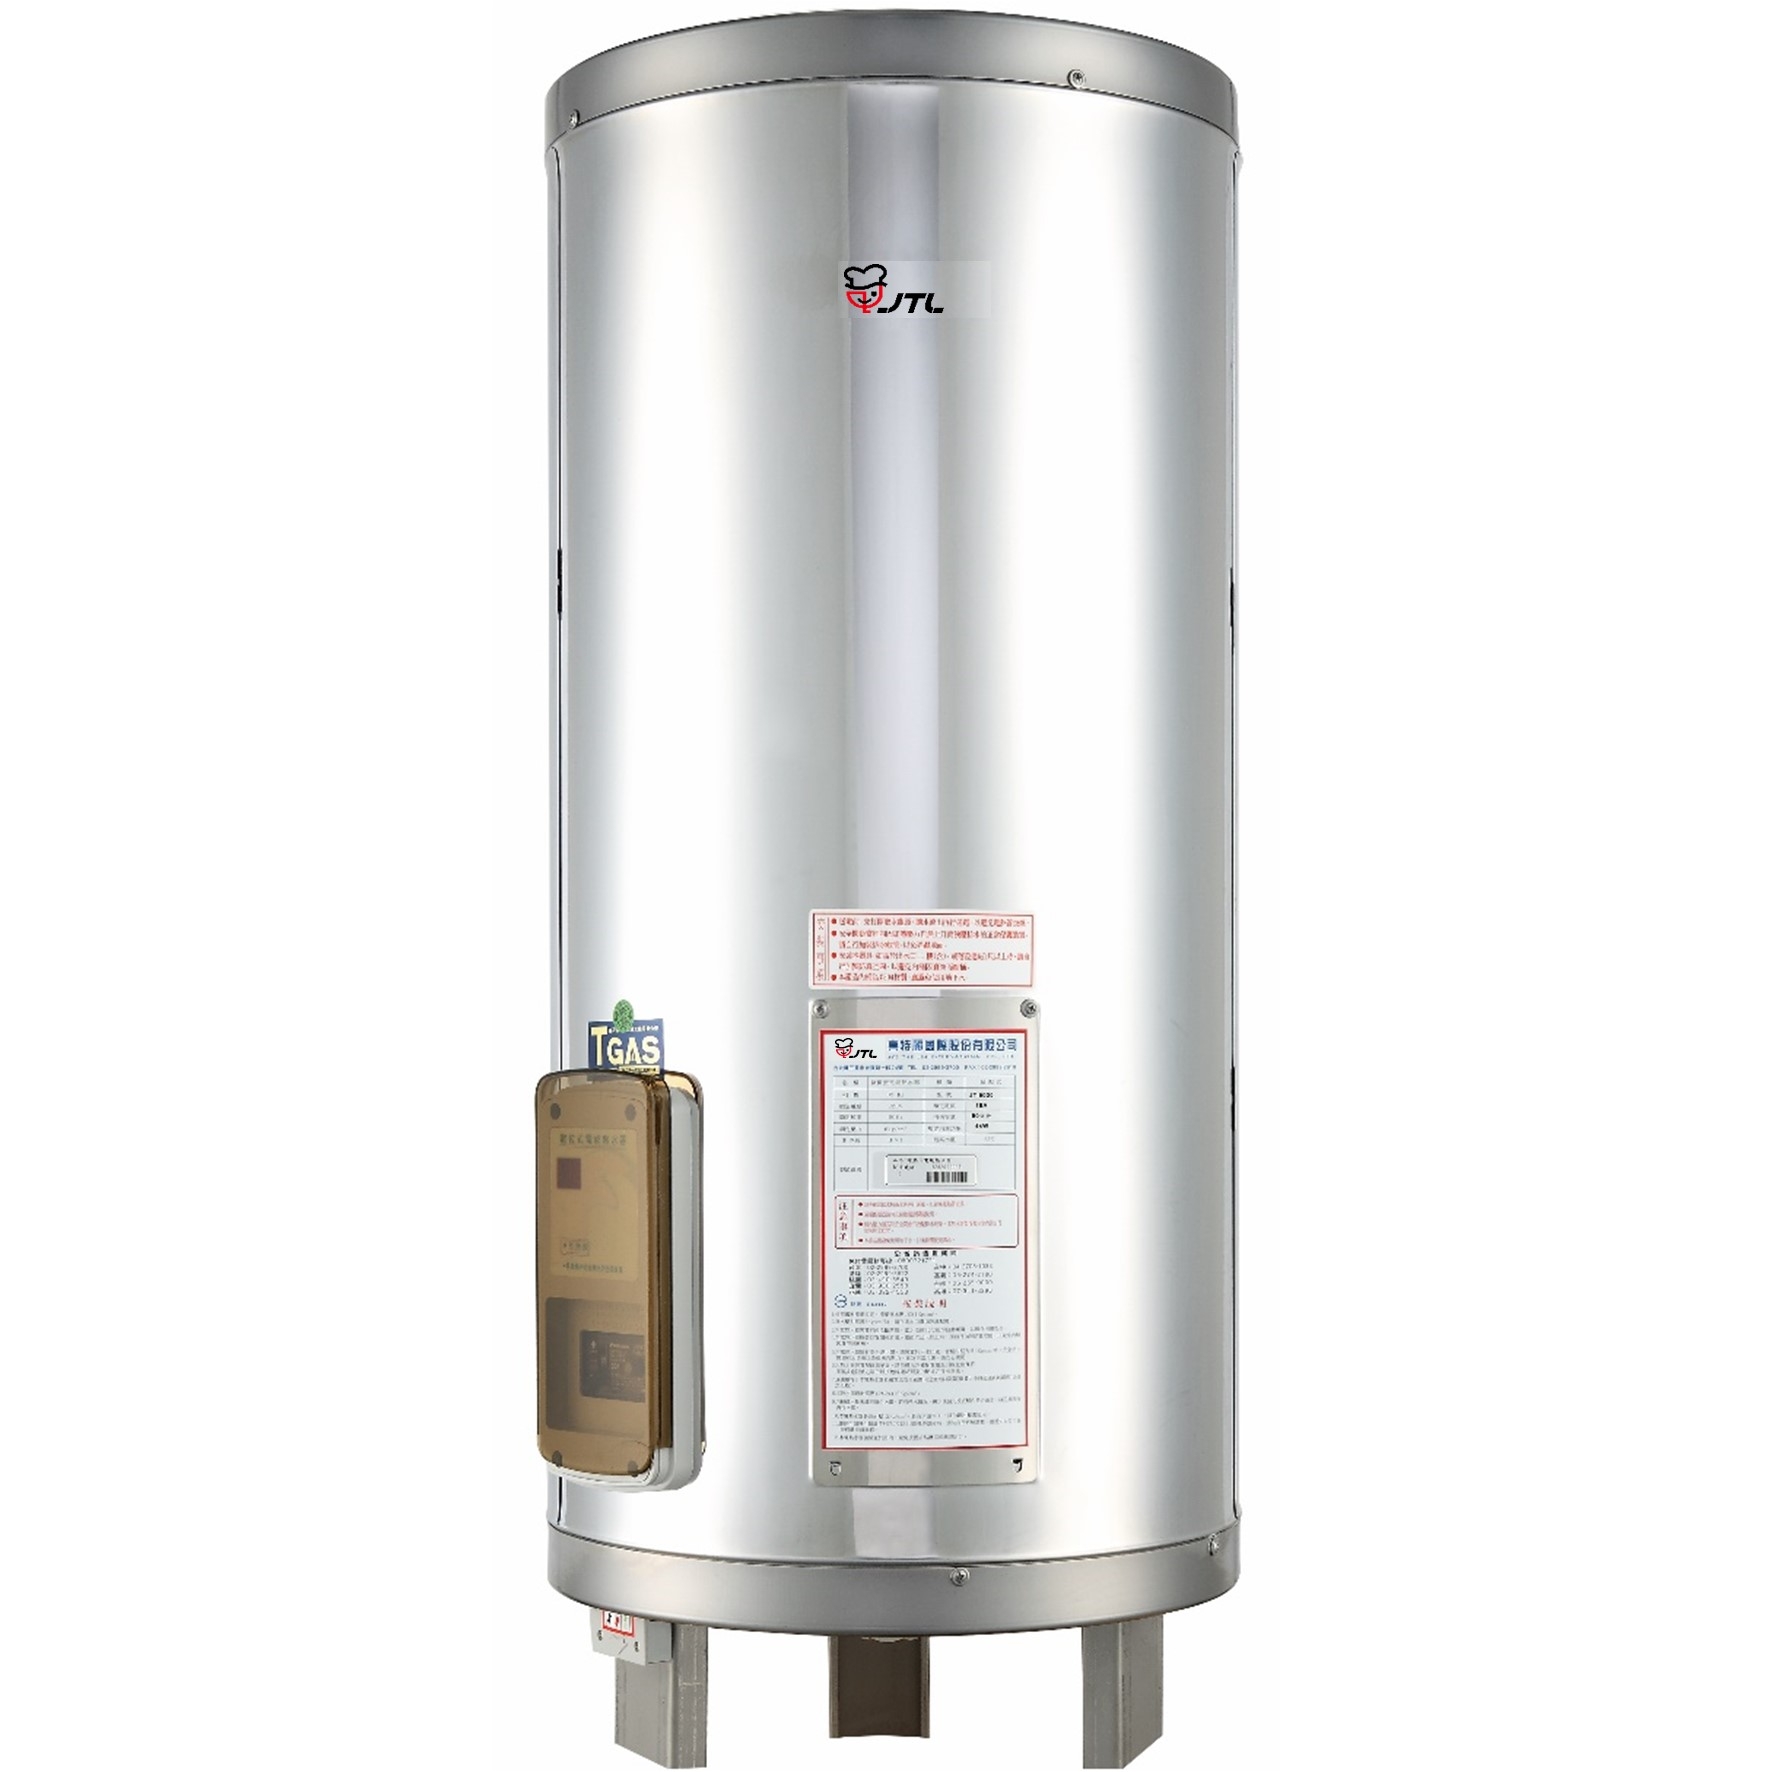 儲熱式電熱水器-30加侖-標準型